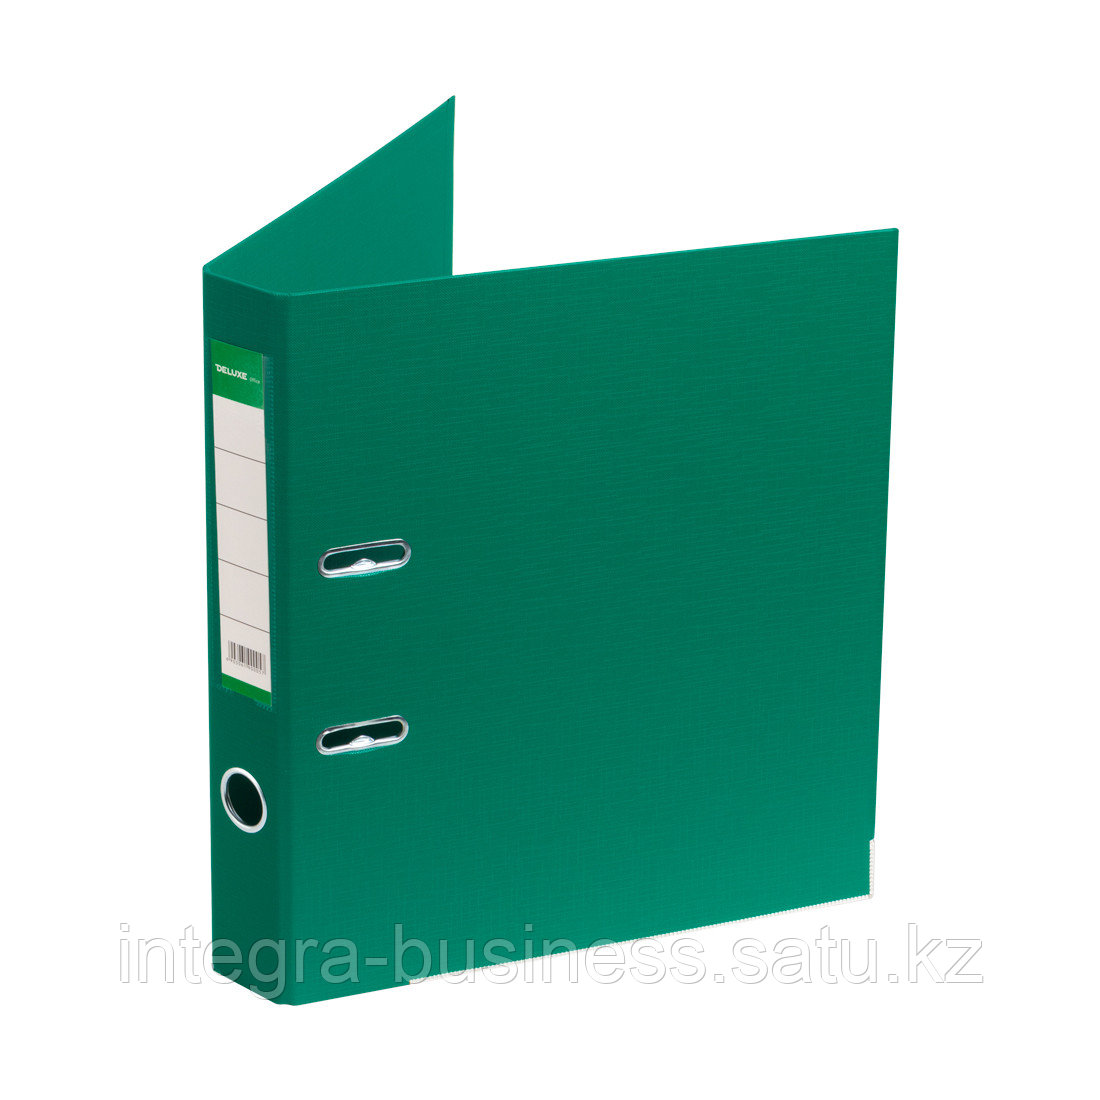 Папка-регистратор Deluxe с арочным механизмом, Office 2-GN36 (2" GREEN), А4, 50 мм, зеленый, фото 1